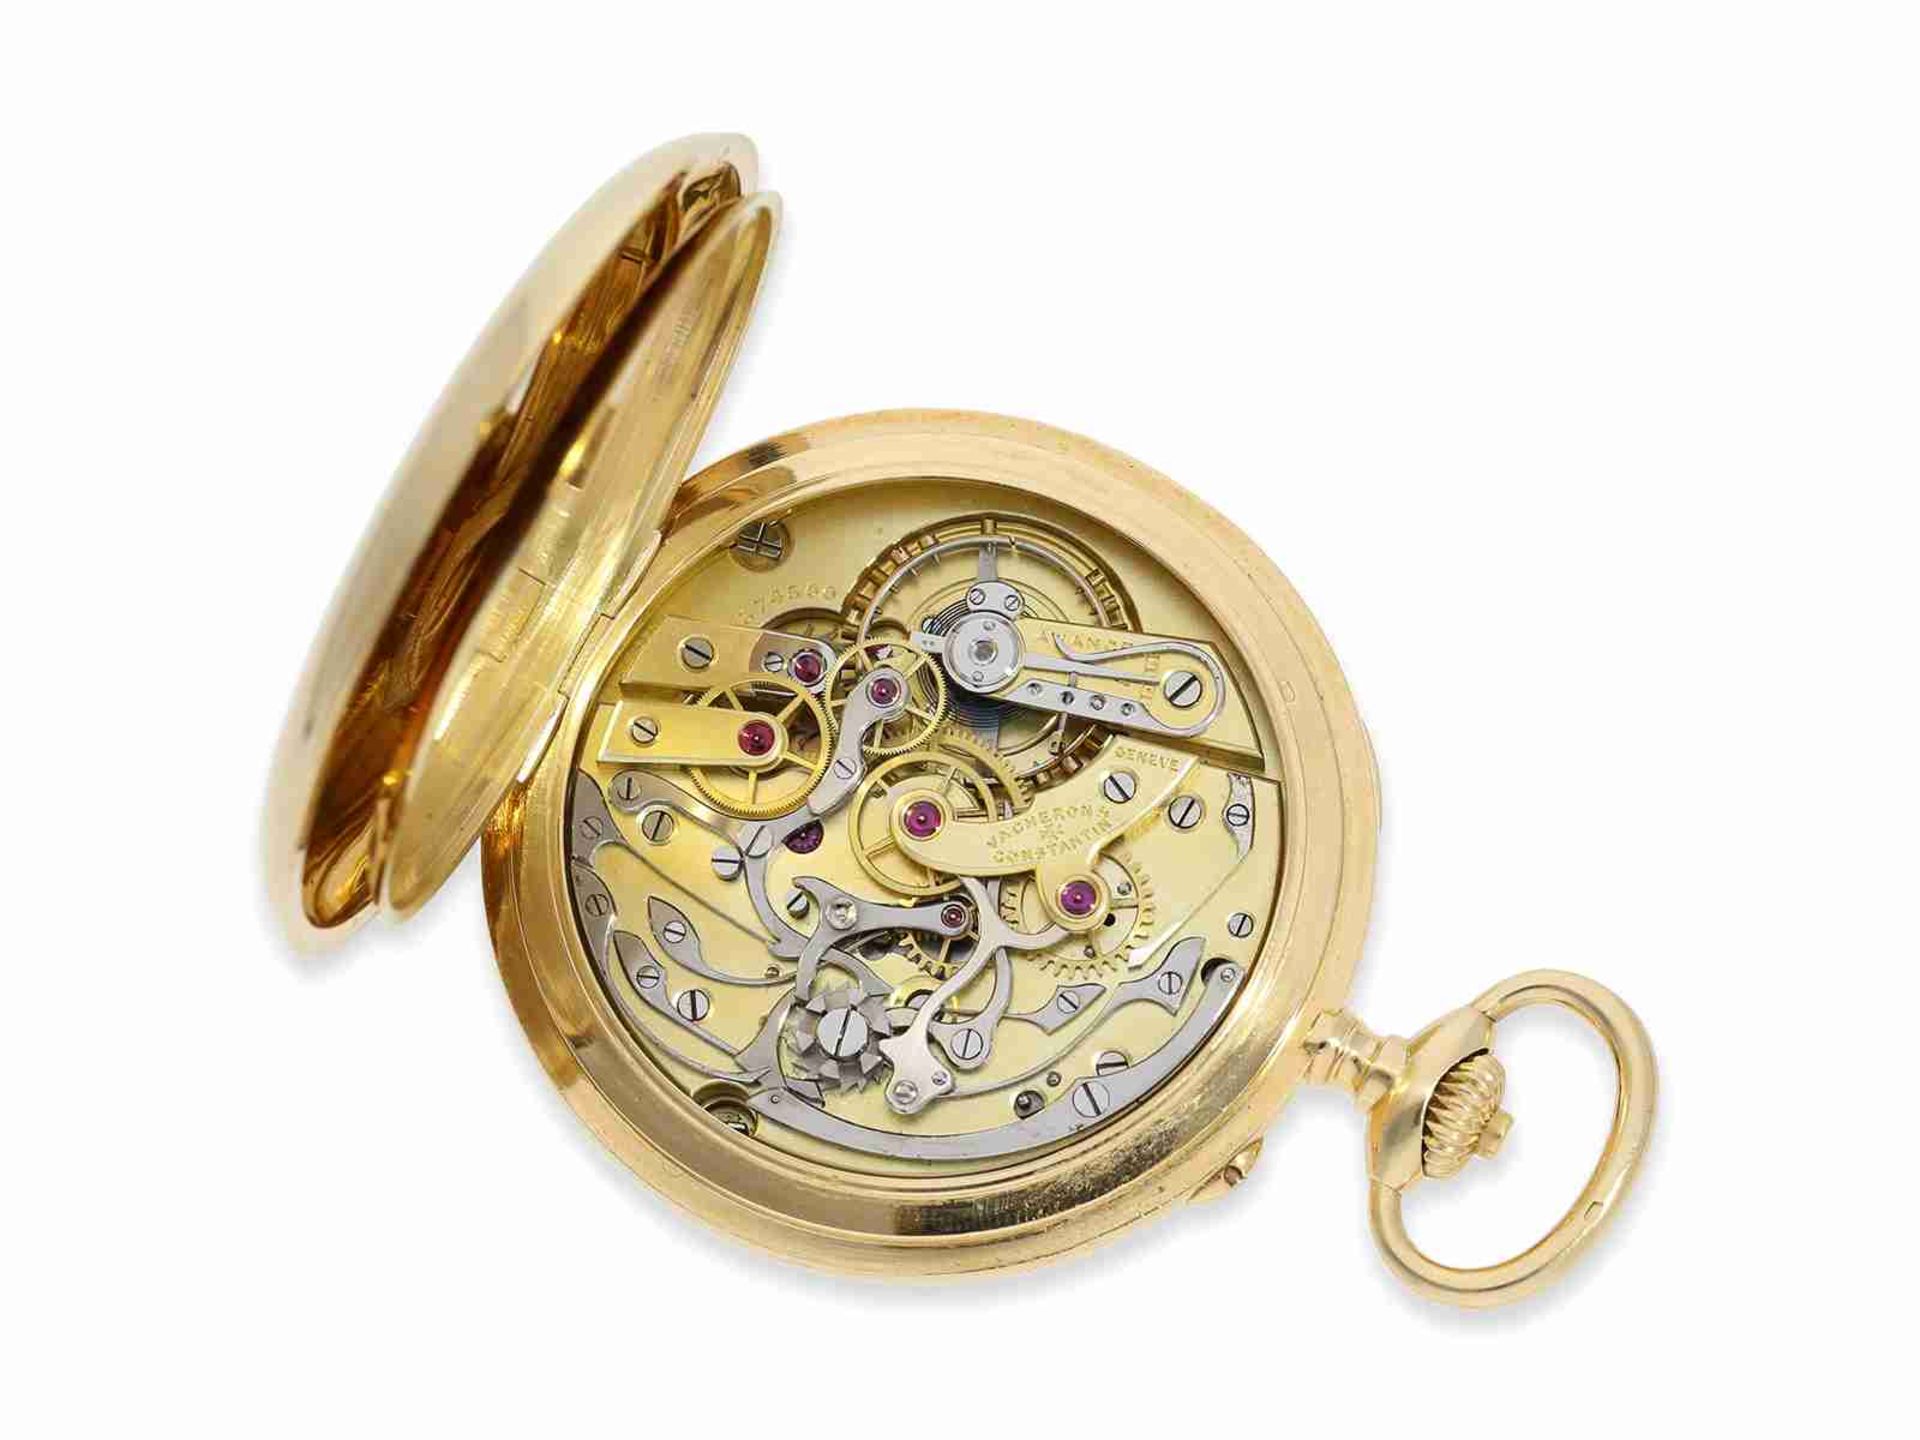 Taschenuhr: exquisites Vacheron & Constantin Ankerchronometer mit Chronograph und Register, nahezu n - Bild 3 aus 11